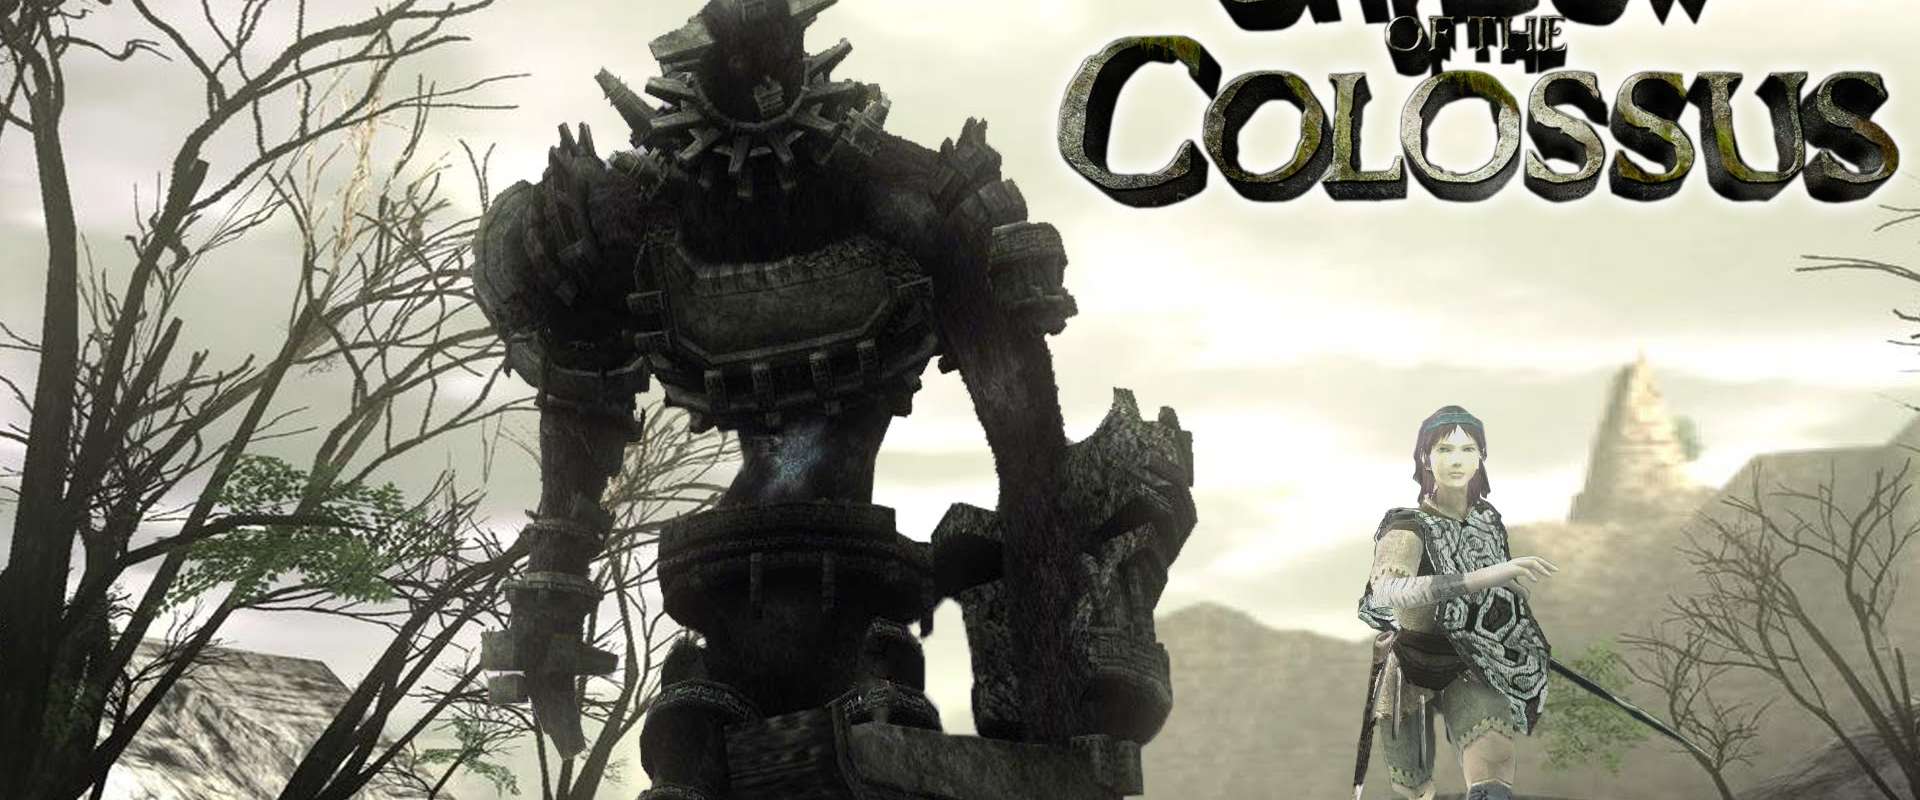 Shadow of the Colossus - PCSX2 4K - Xbox Series X 